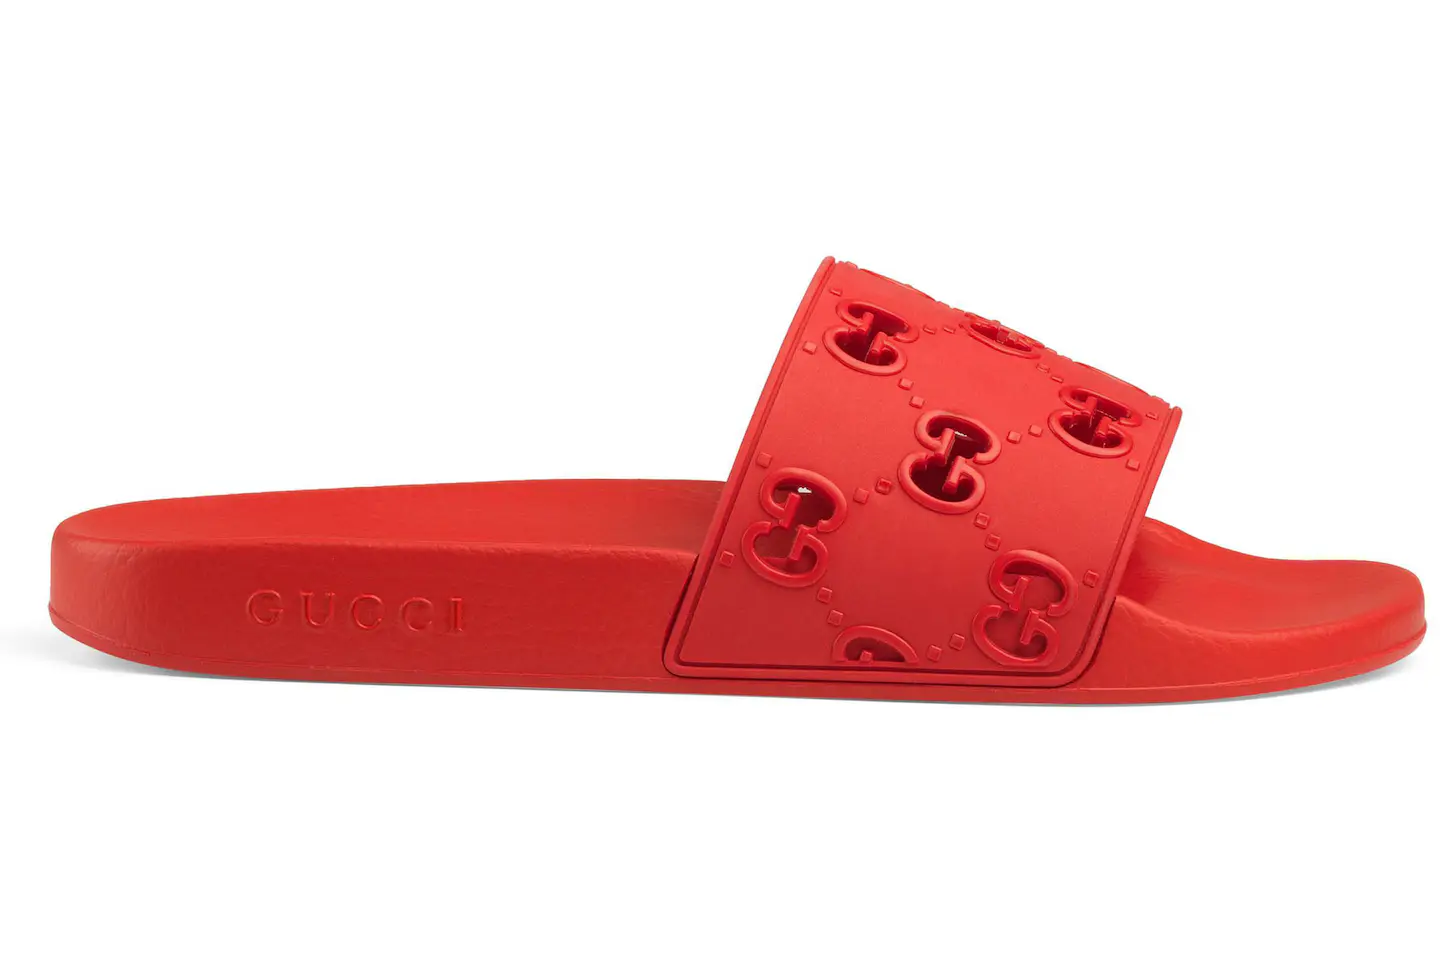 Gucci GG Slide Rubber Red Men's - 575957 JDR00 6448 - US